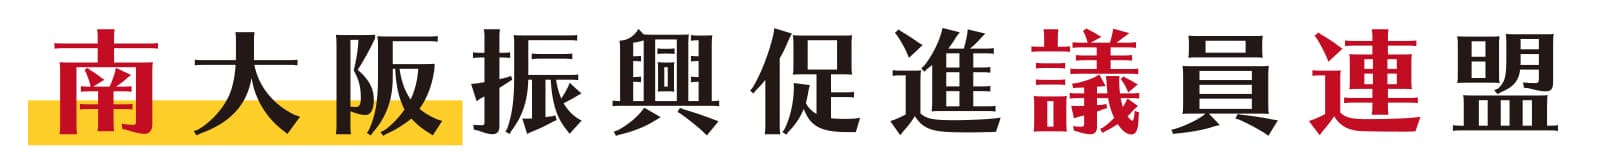 南大阪振興促進議員連盟のロゴ